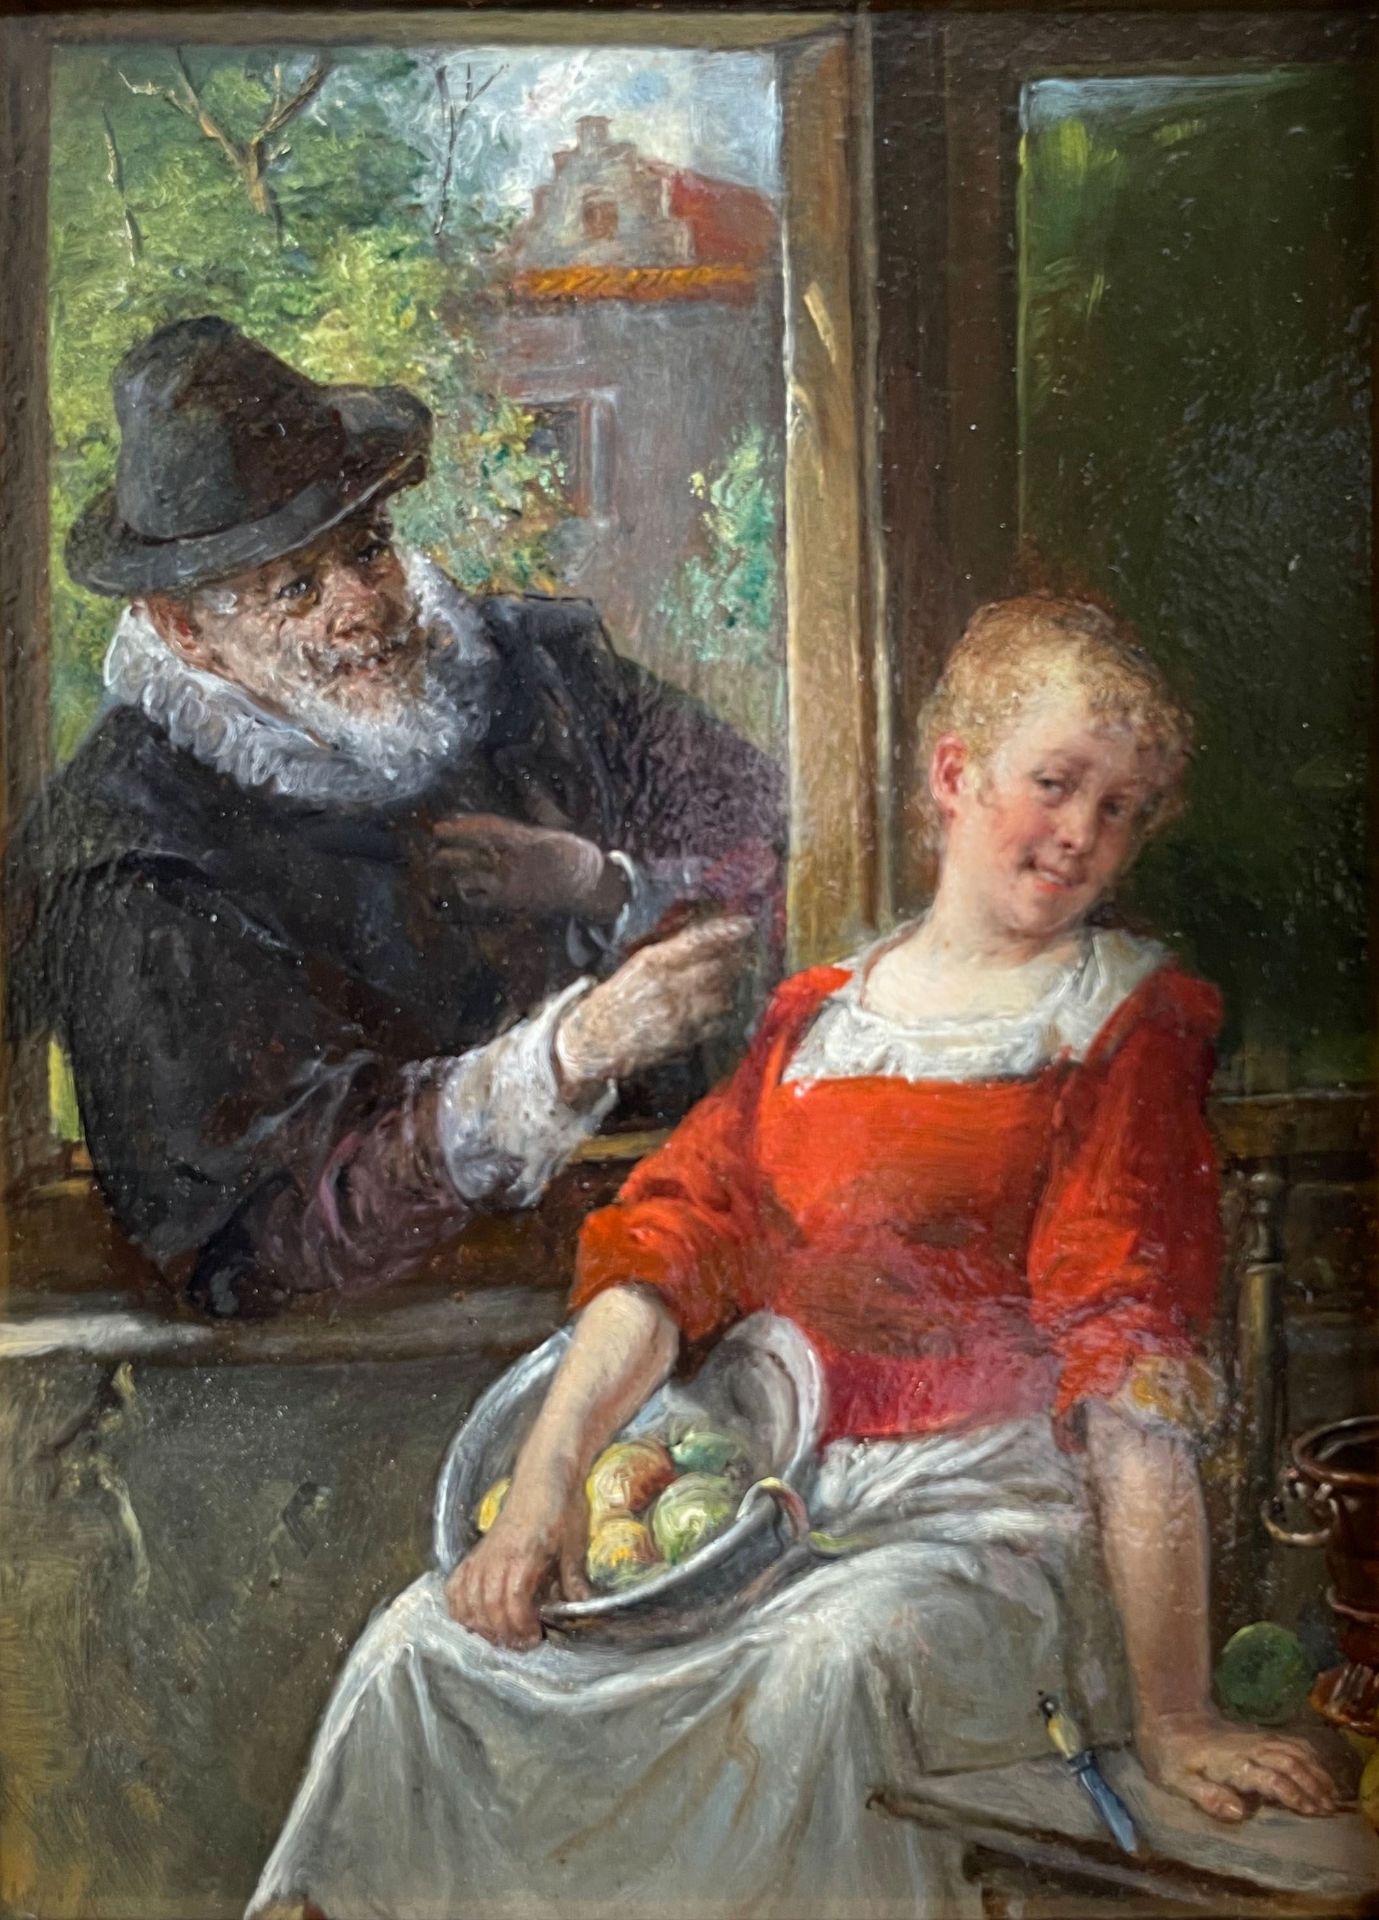 Adolf Humborg (1847-1913), bäuerliches Interieur: Äpfel schälende Magd an einem Fenster sitzend,